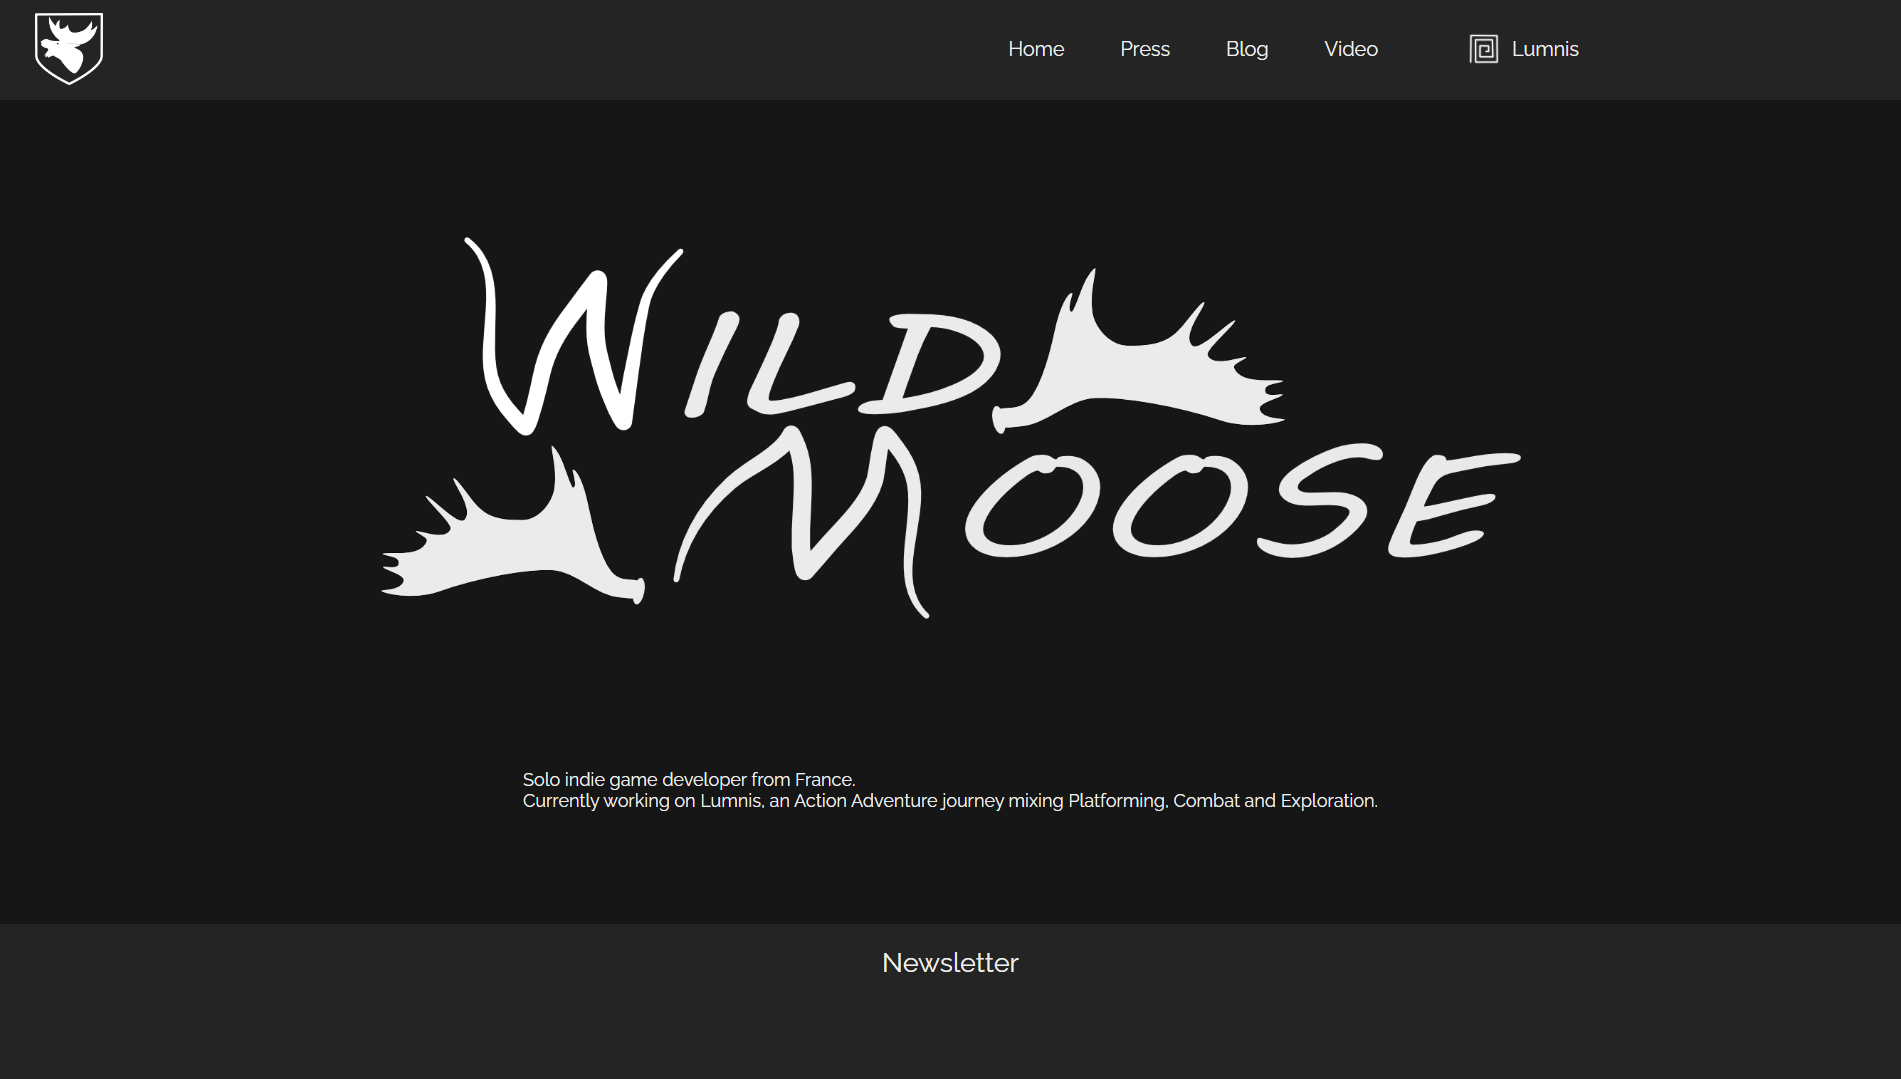 site web de wild moose games image